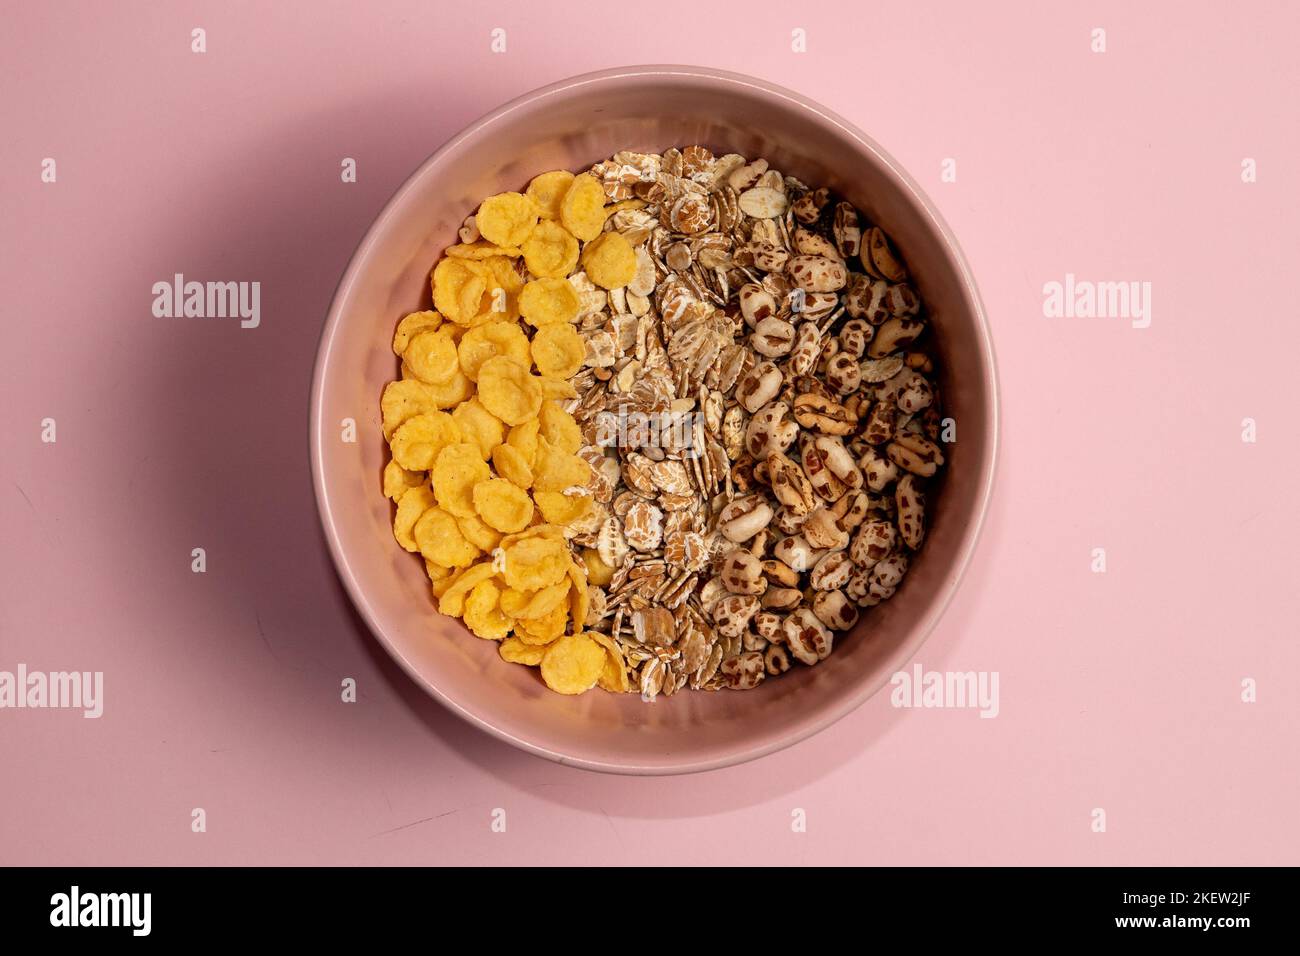 Verschiedene Frühstücksarten Müsli in einer rosa Schale. Maisflocken gerollter Hafer und gepuffter Weizen. Rosa Hintergrund. Stockfoto